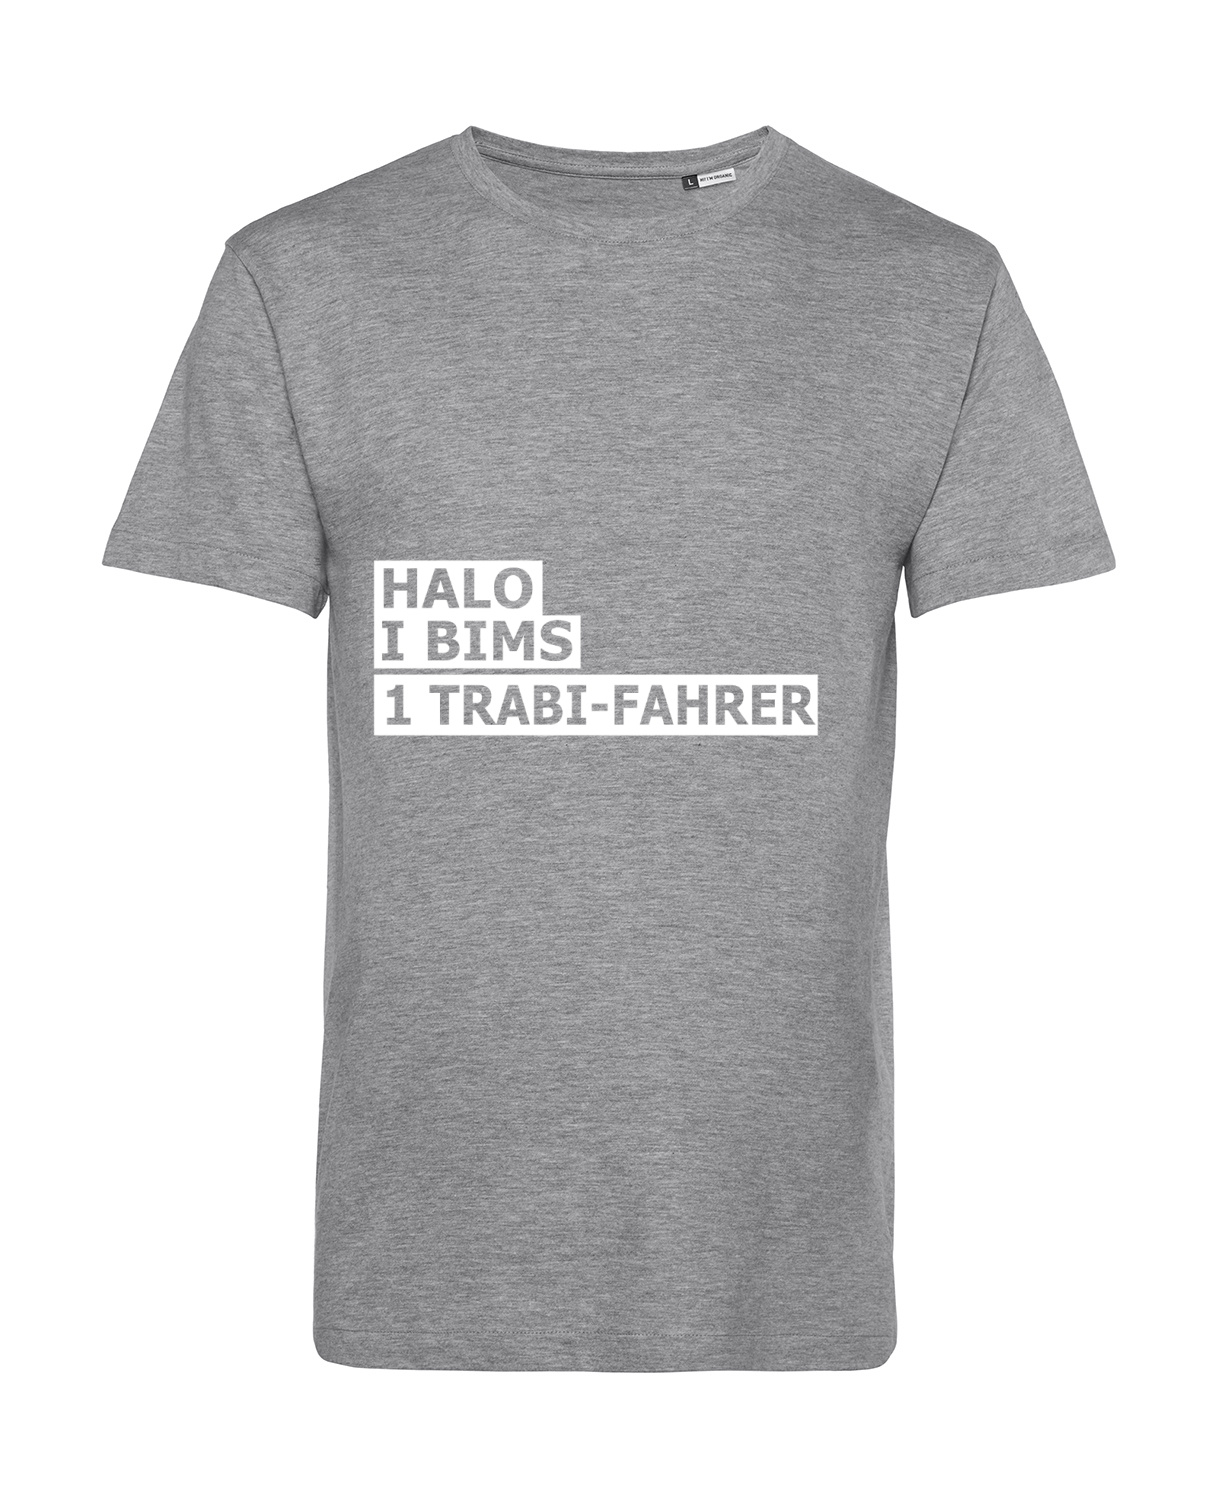 Nachhaltiges T-Shirt Herren 2Takter - Halo I bims 1 Trabi-Fahrer